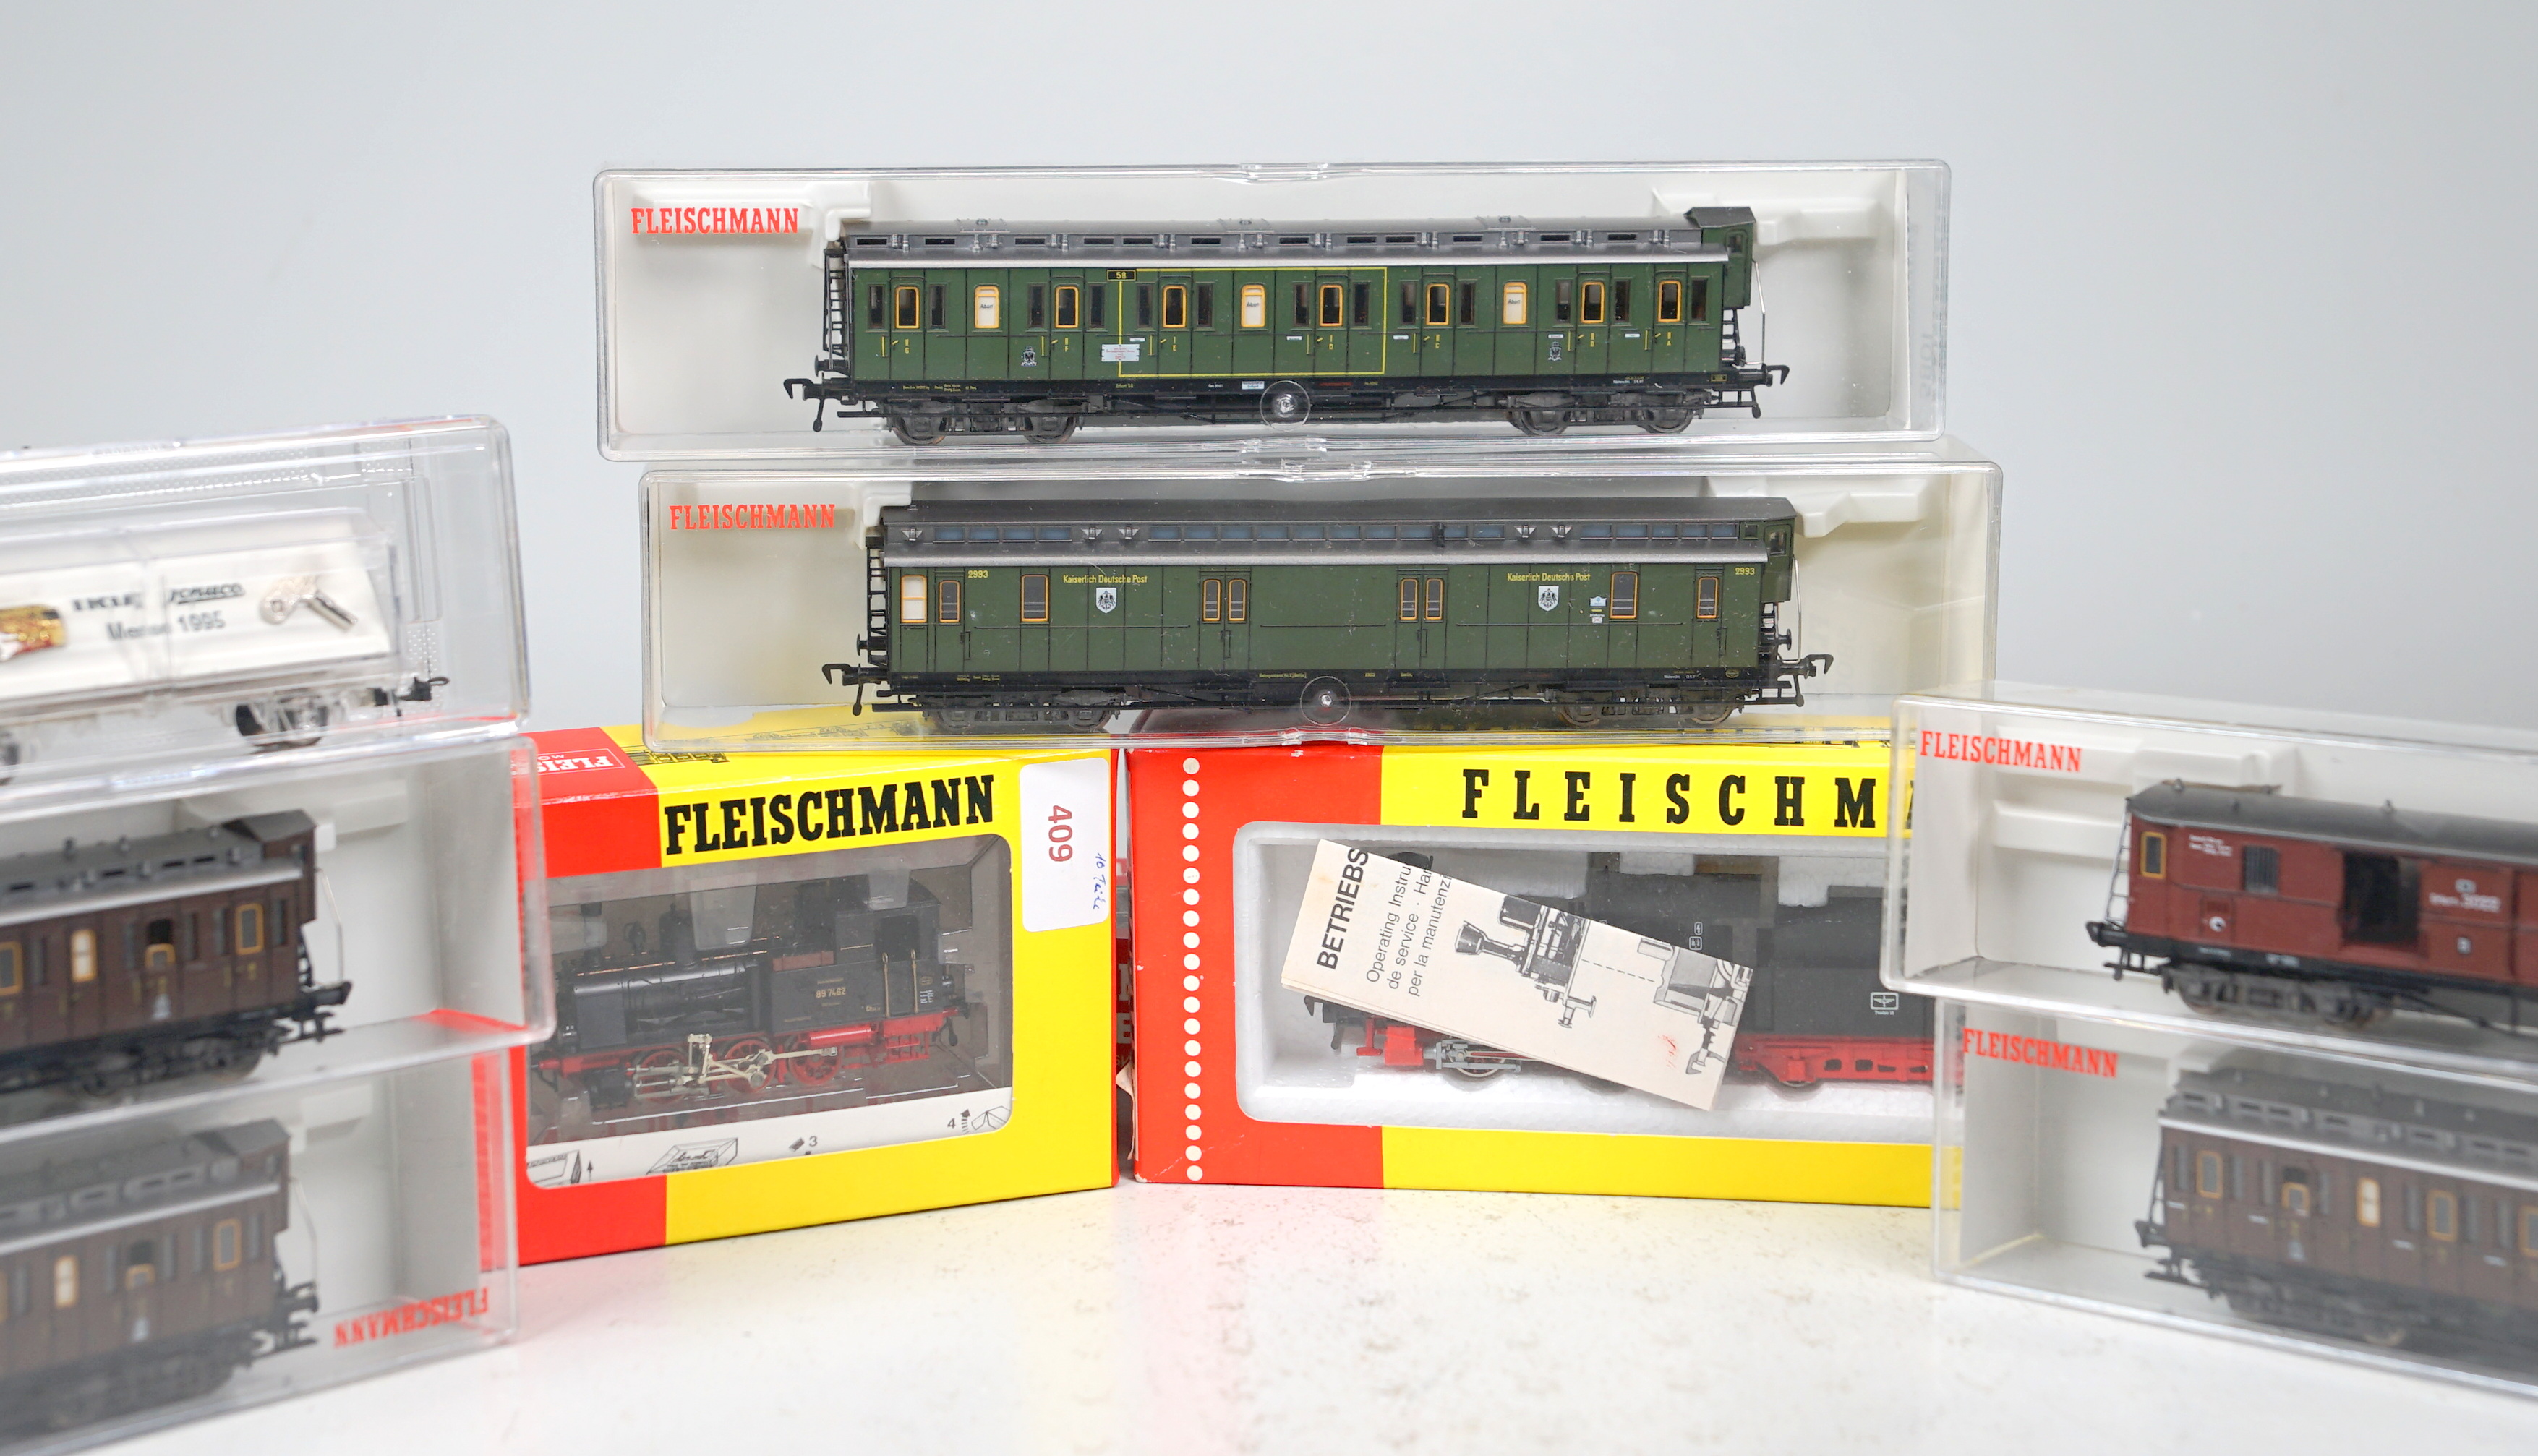 Fleischmann H0 Konvolut 10-teilig mit 2 Loks, 6 Wagen, Gleisen & Trix Schuco-Sonderwagen - Image 2 of 2